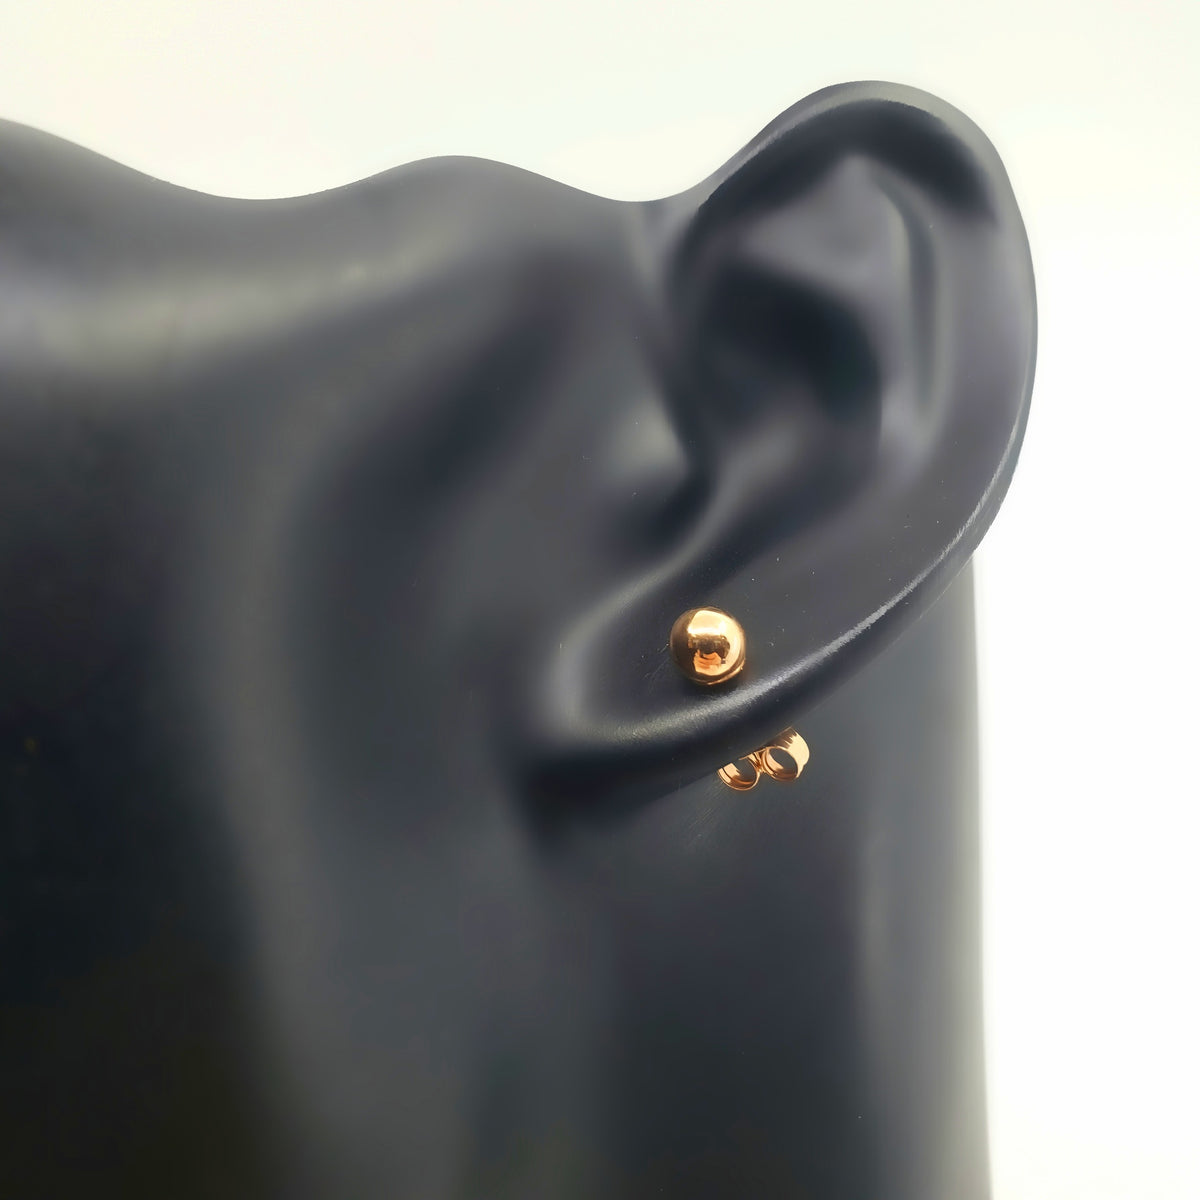 14K Rose Gold Ball Earrings - 5mm